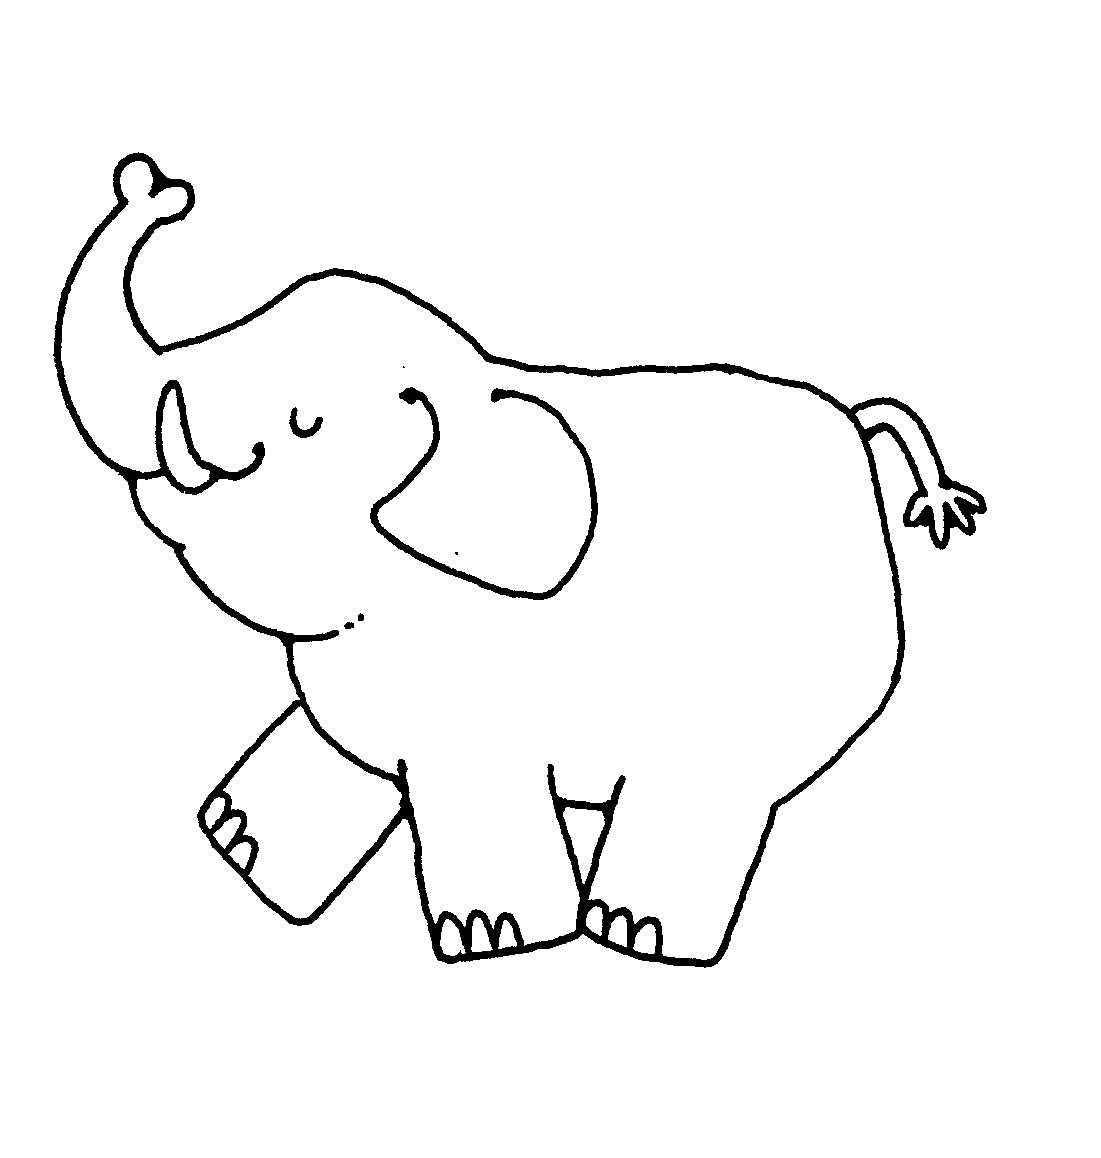 Free elephant images.